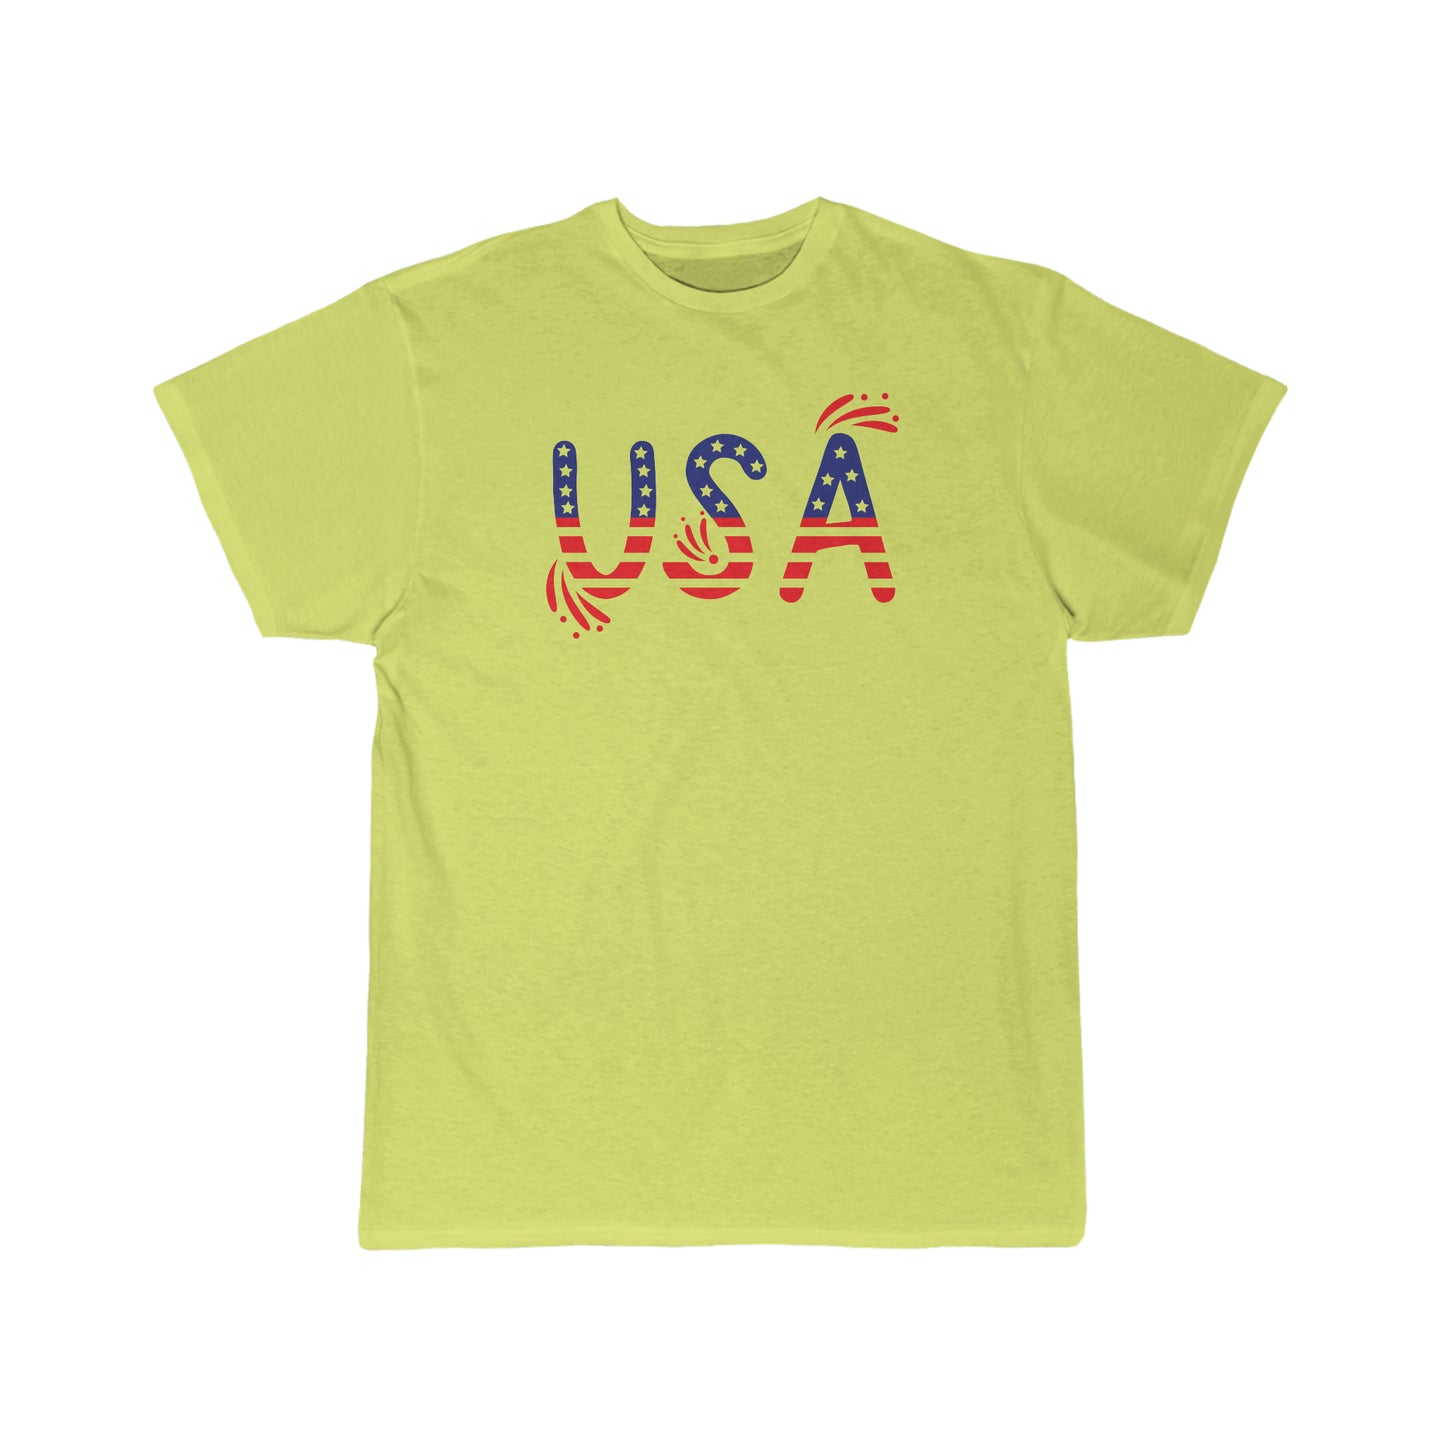 USA Flag Shirt, 4th of July Shirt, Big USA T-shirt, USA Comfort Colors Shirt, Comfort Colors USA Flag Tee, USA Comfort Colors Tee, Usa Shirt Men's Short Sleeve Tee